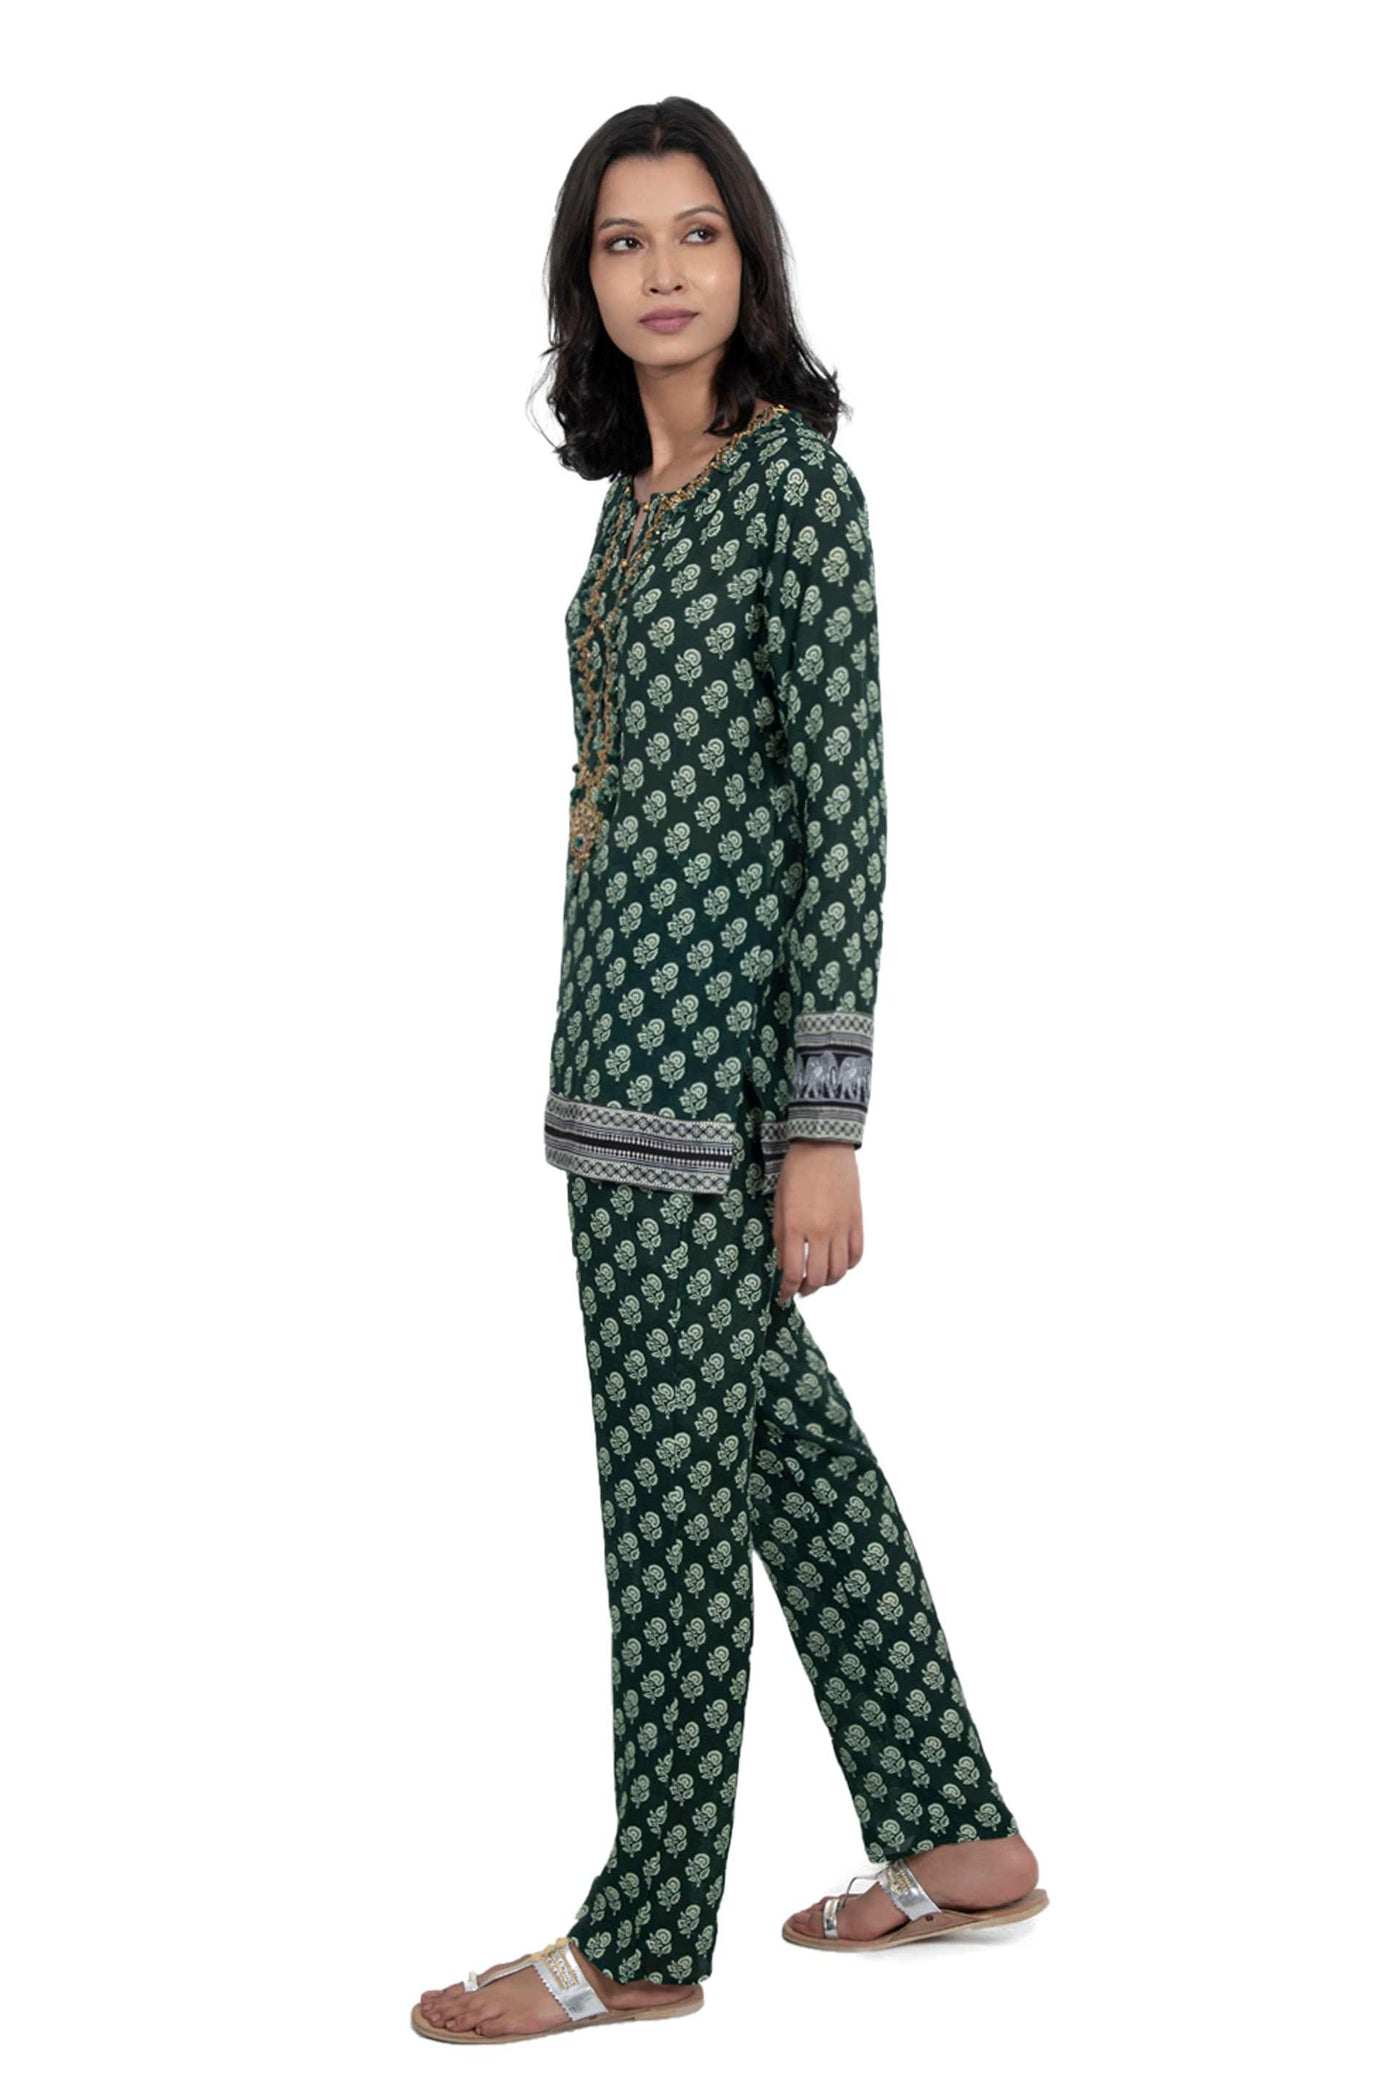 monisha jaising Khusro Bagh Twin Set green online shopping melange singapore indian designer wear